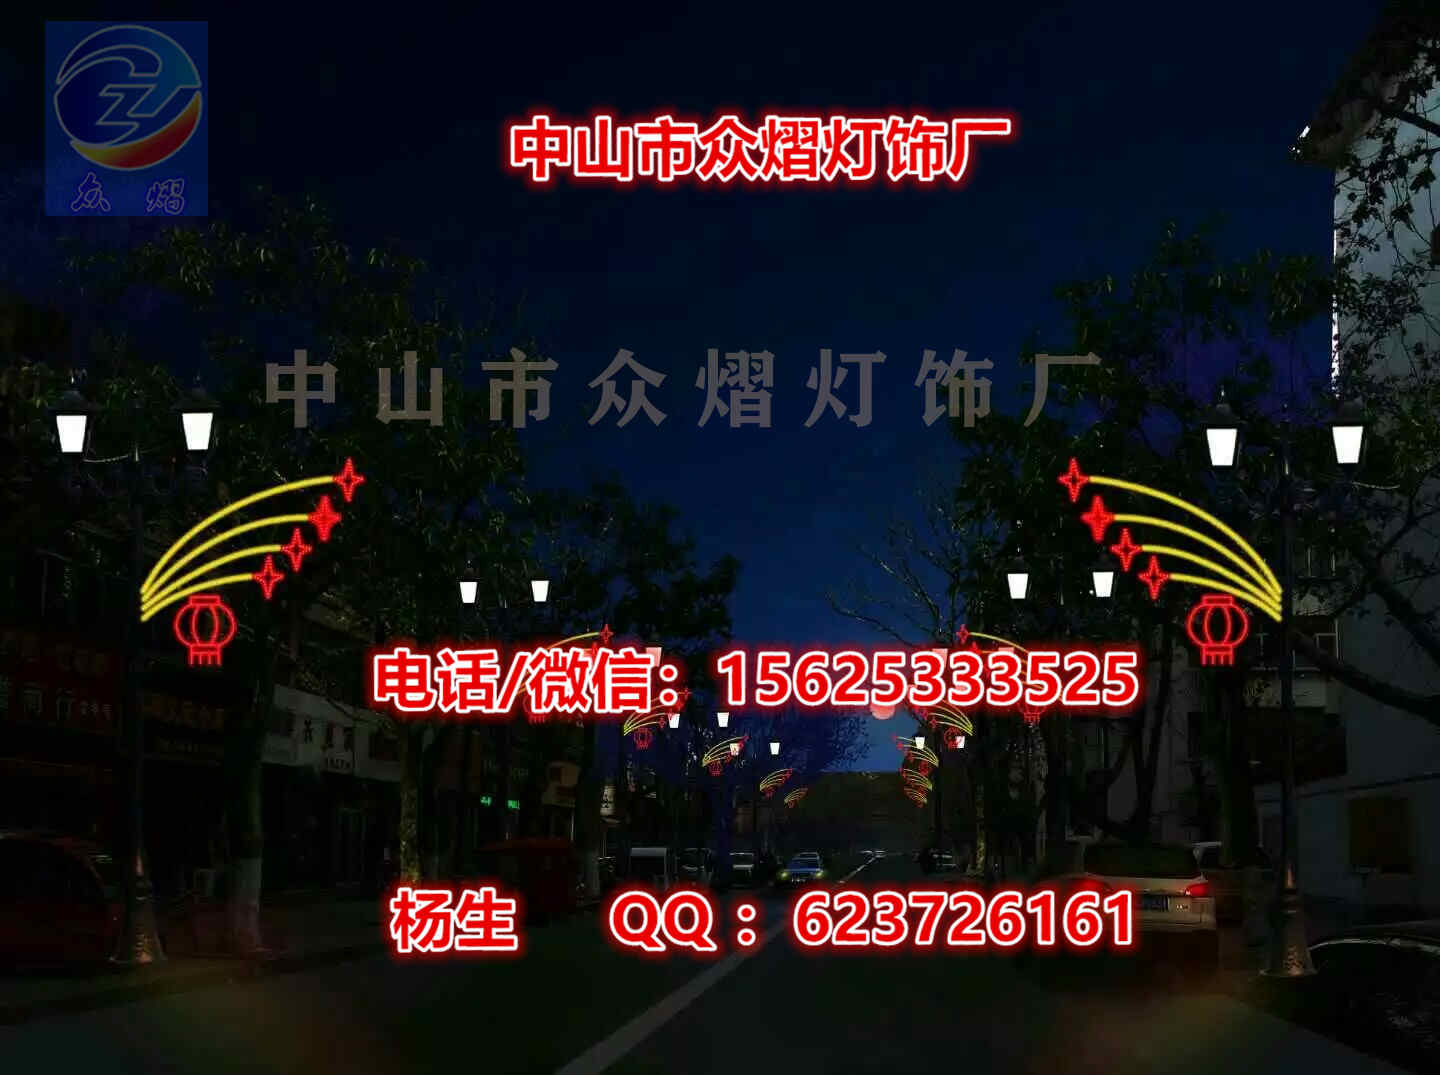 国庆街道亮化 中国结过街灯 LED双面灯串 节日装饰灯画 灯杆造型灯图片